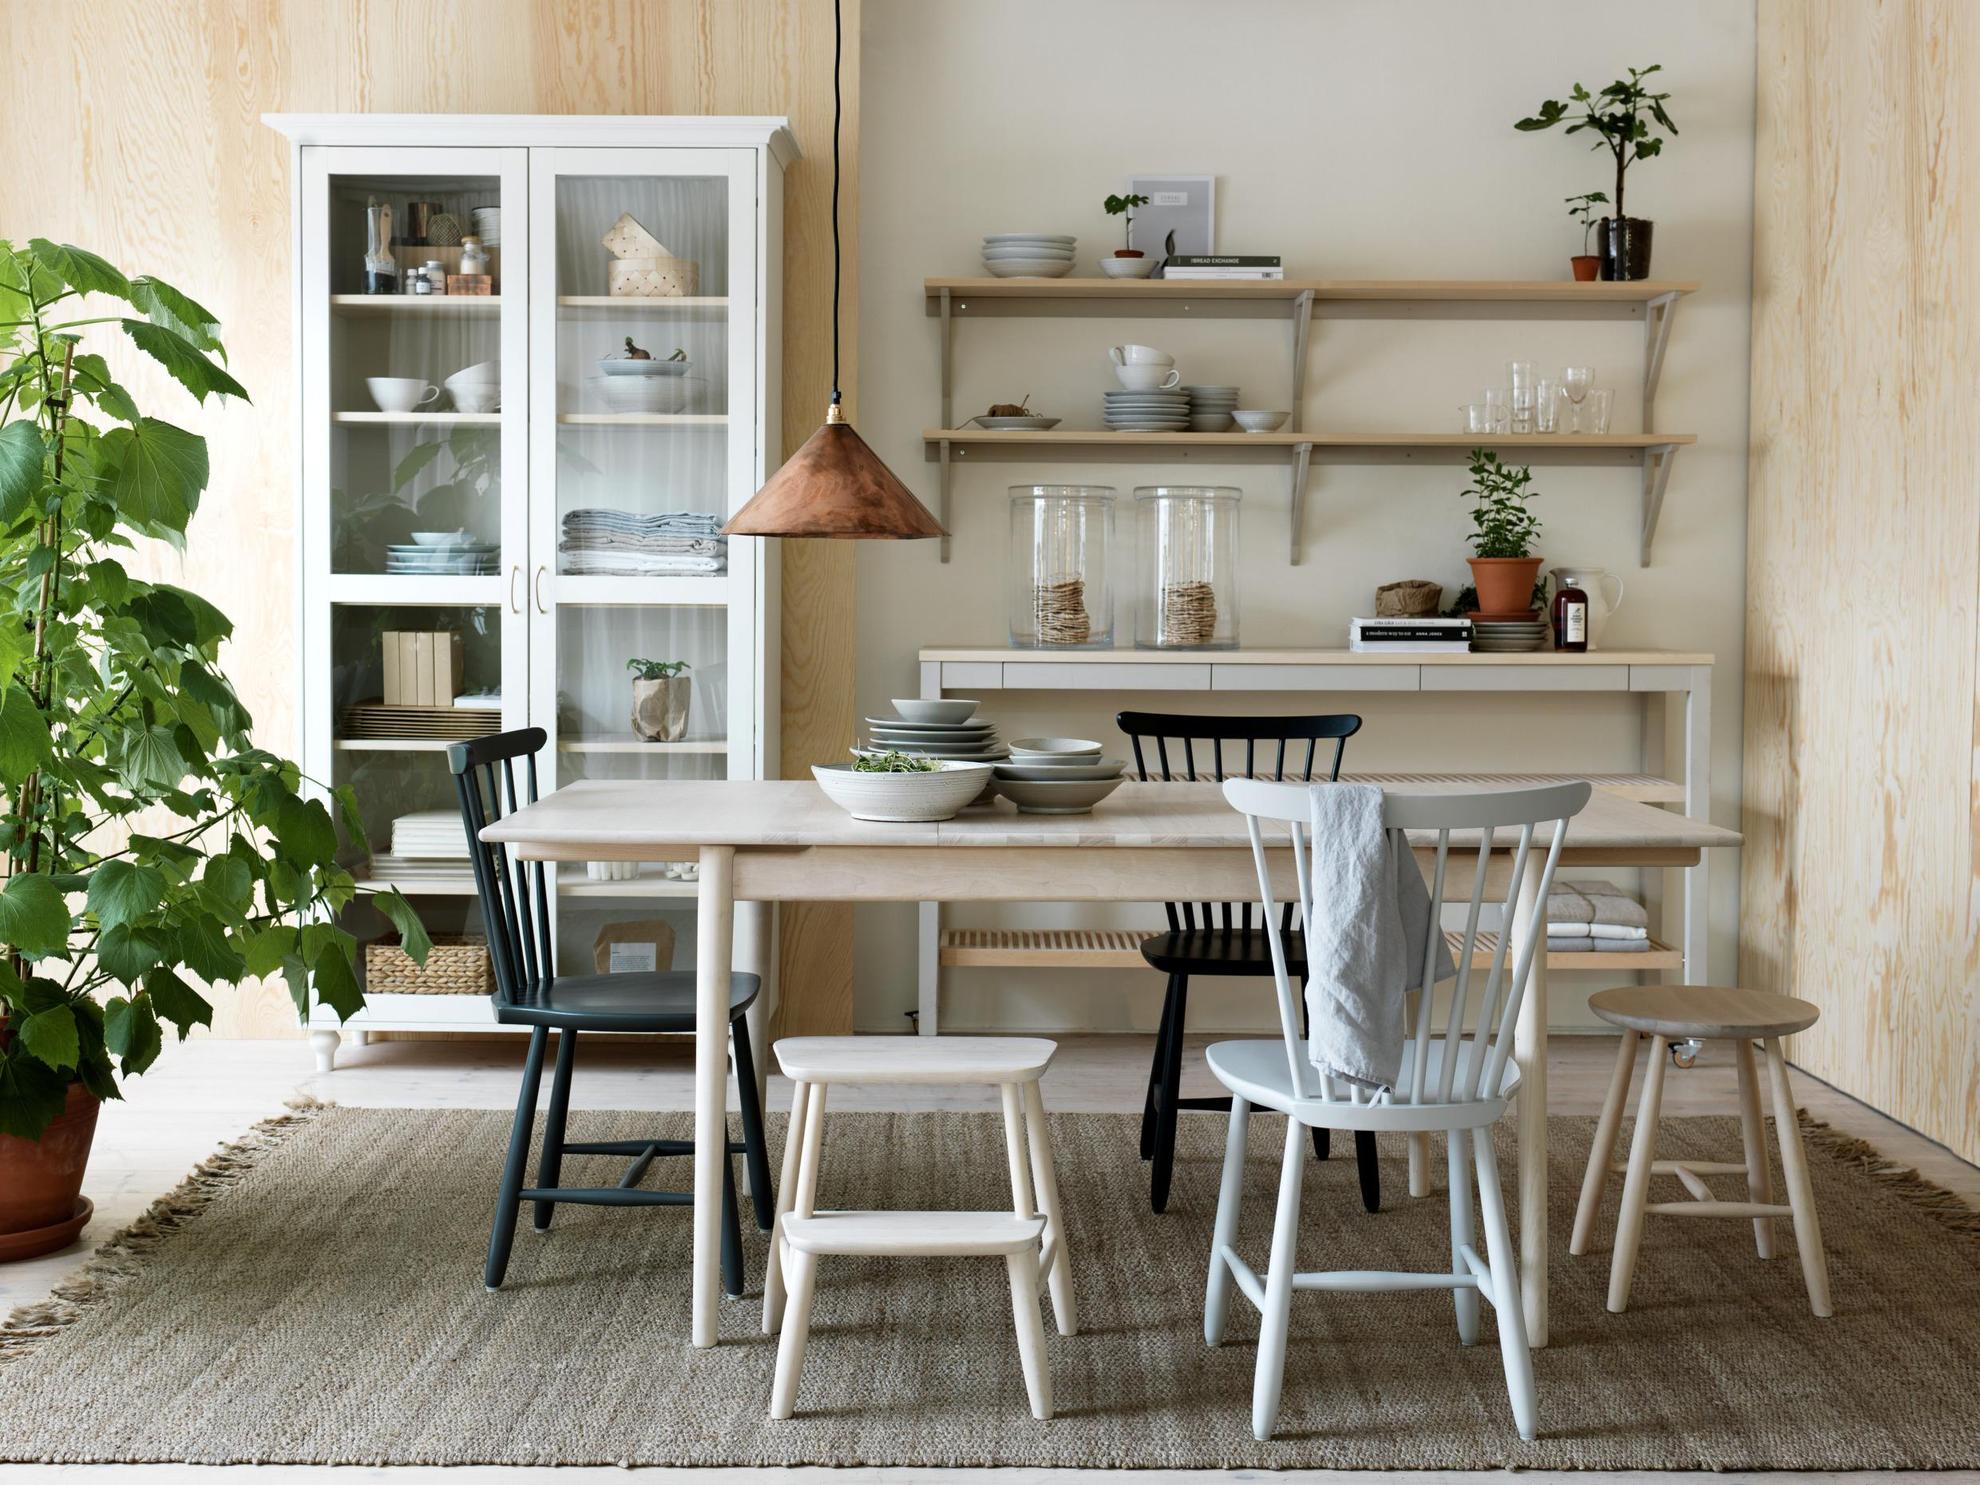 Des chaises en bois sont disposées autour d'une table en bois et des bols sont posés sur la table. Derrière, il y a une vitrine remplie et à coté des étagères de cuisine.